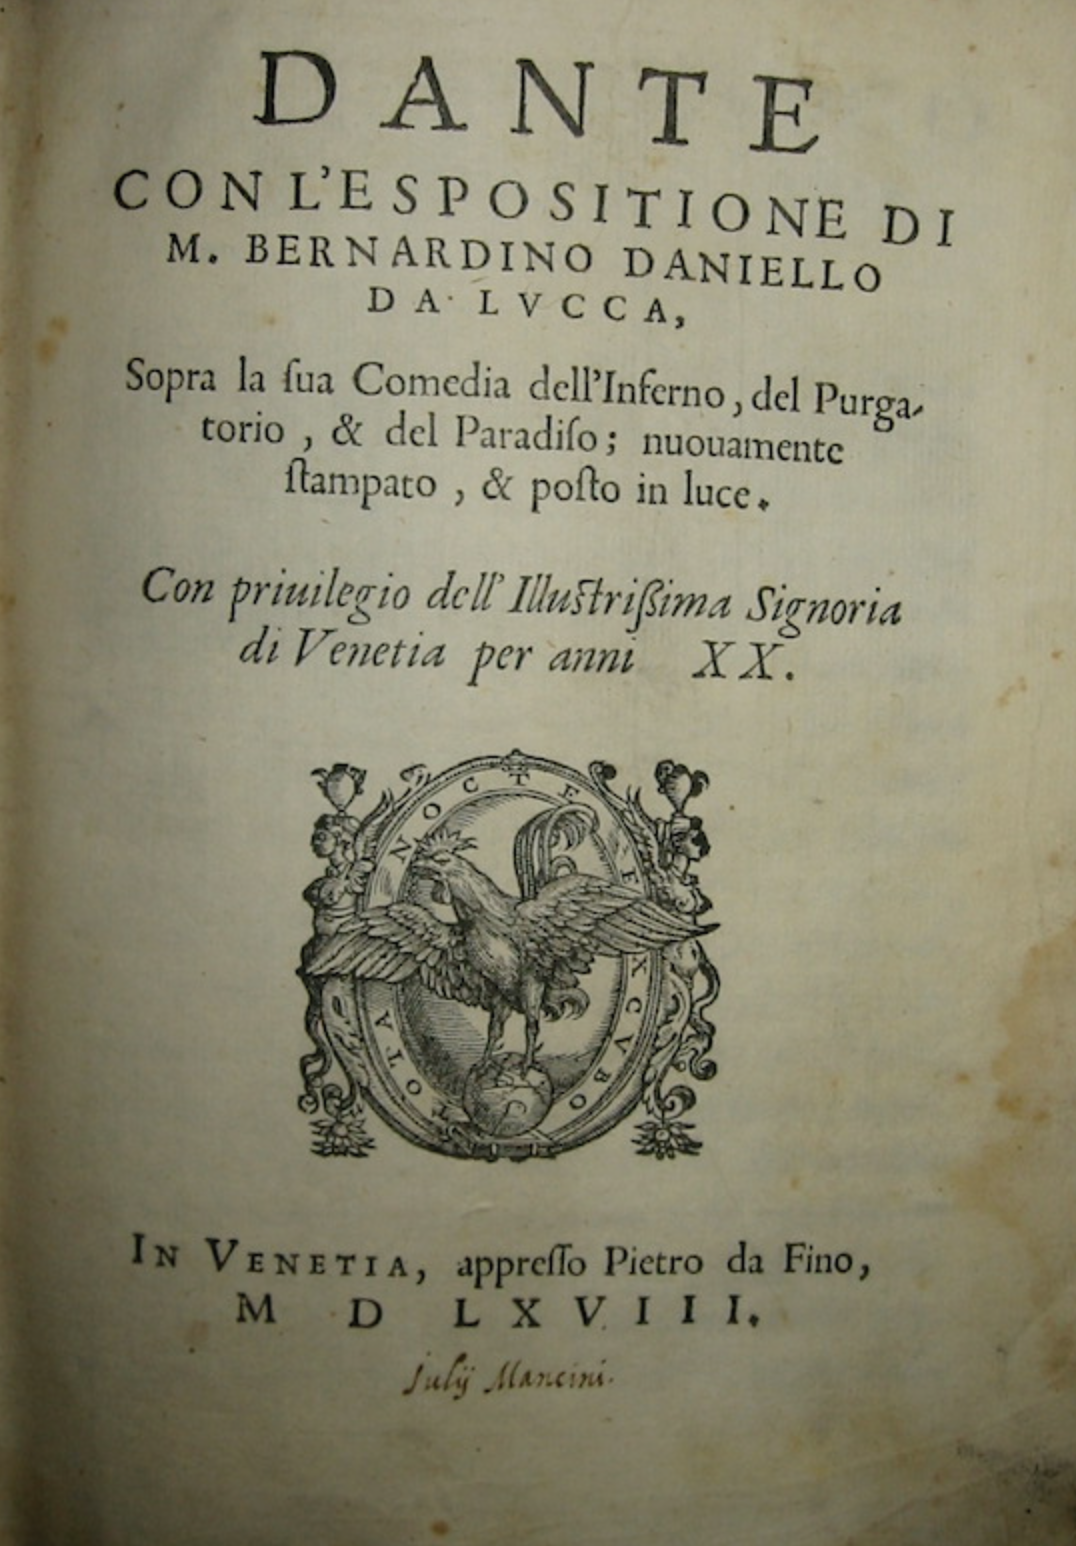 Dante con l'espositione di M. Bernardino Daniello da Lucca, sopra la s